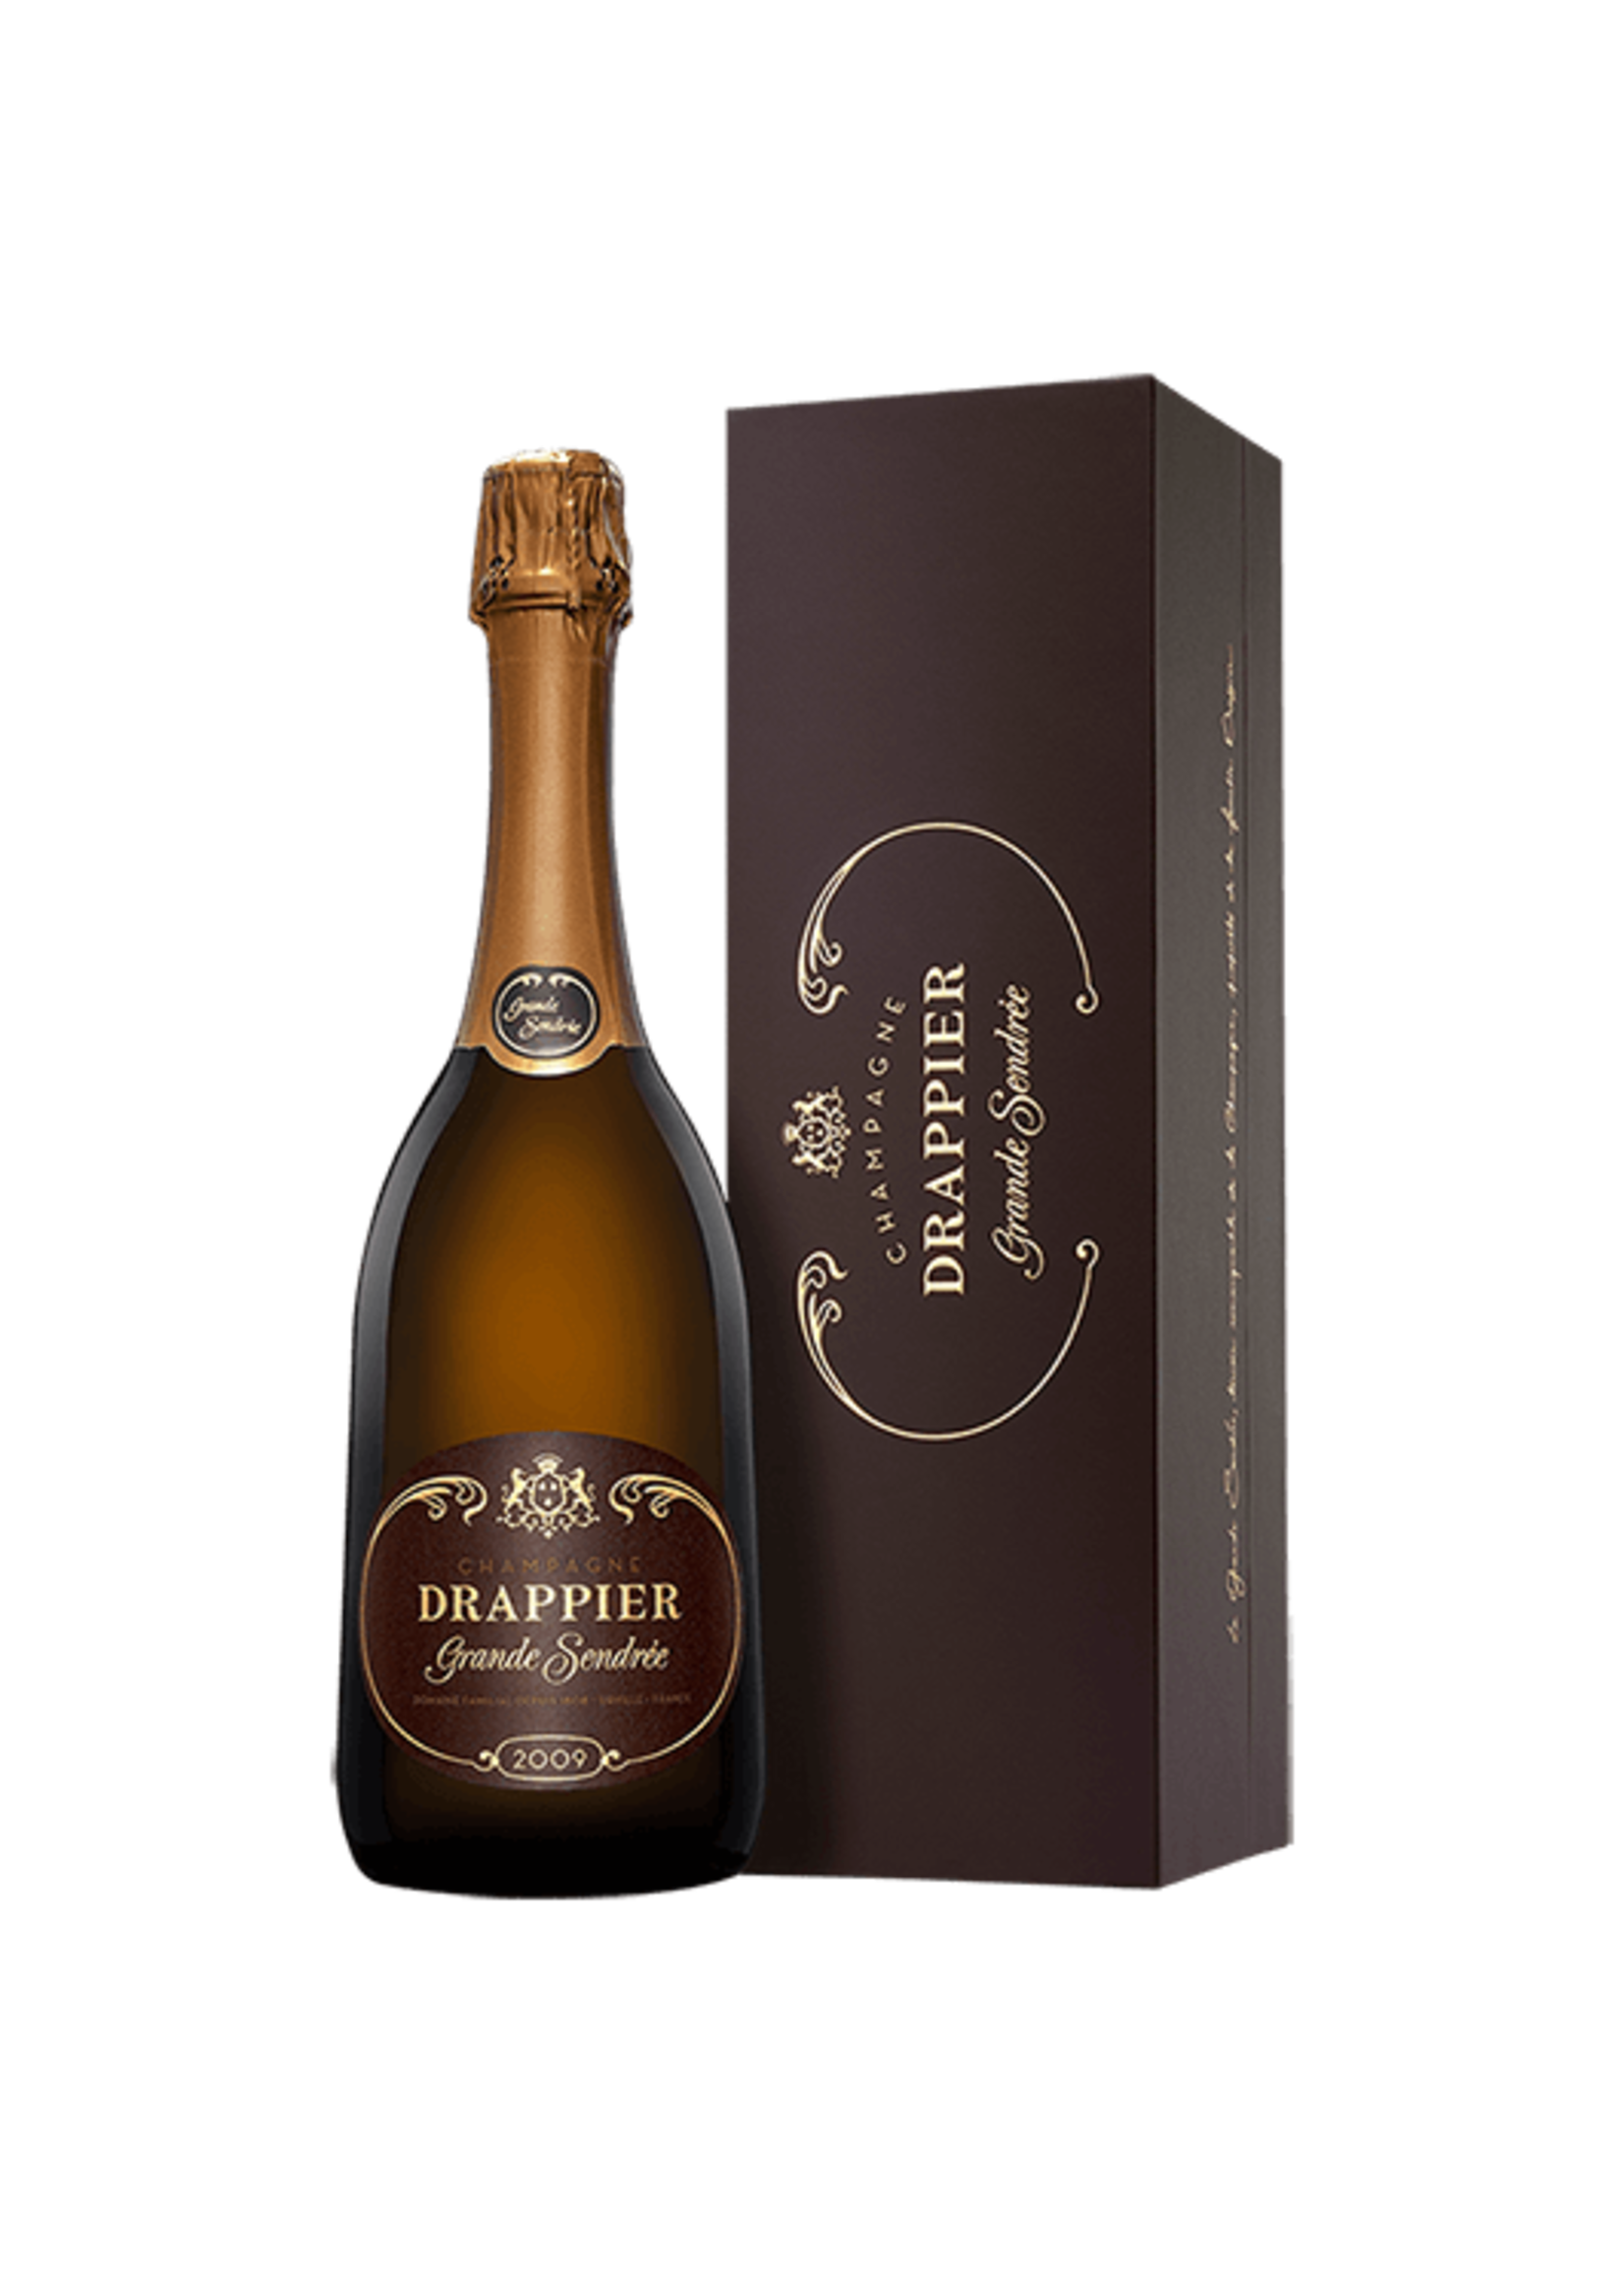 Champagne Drappier Champagne Drappier / Brut Grande Sendree 2009 / 750 mL